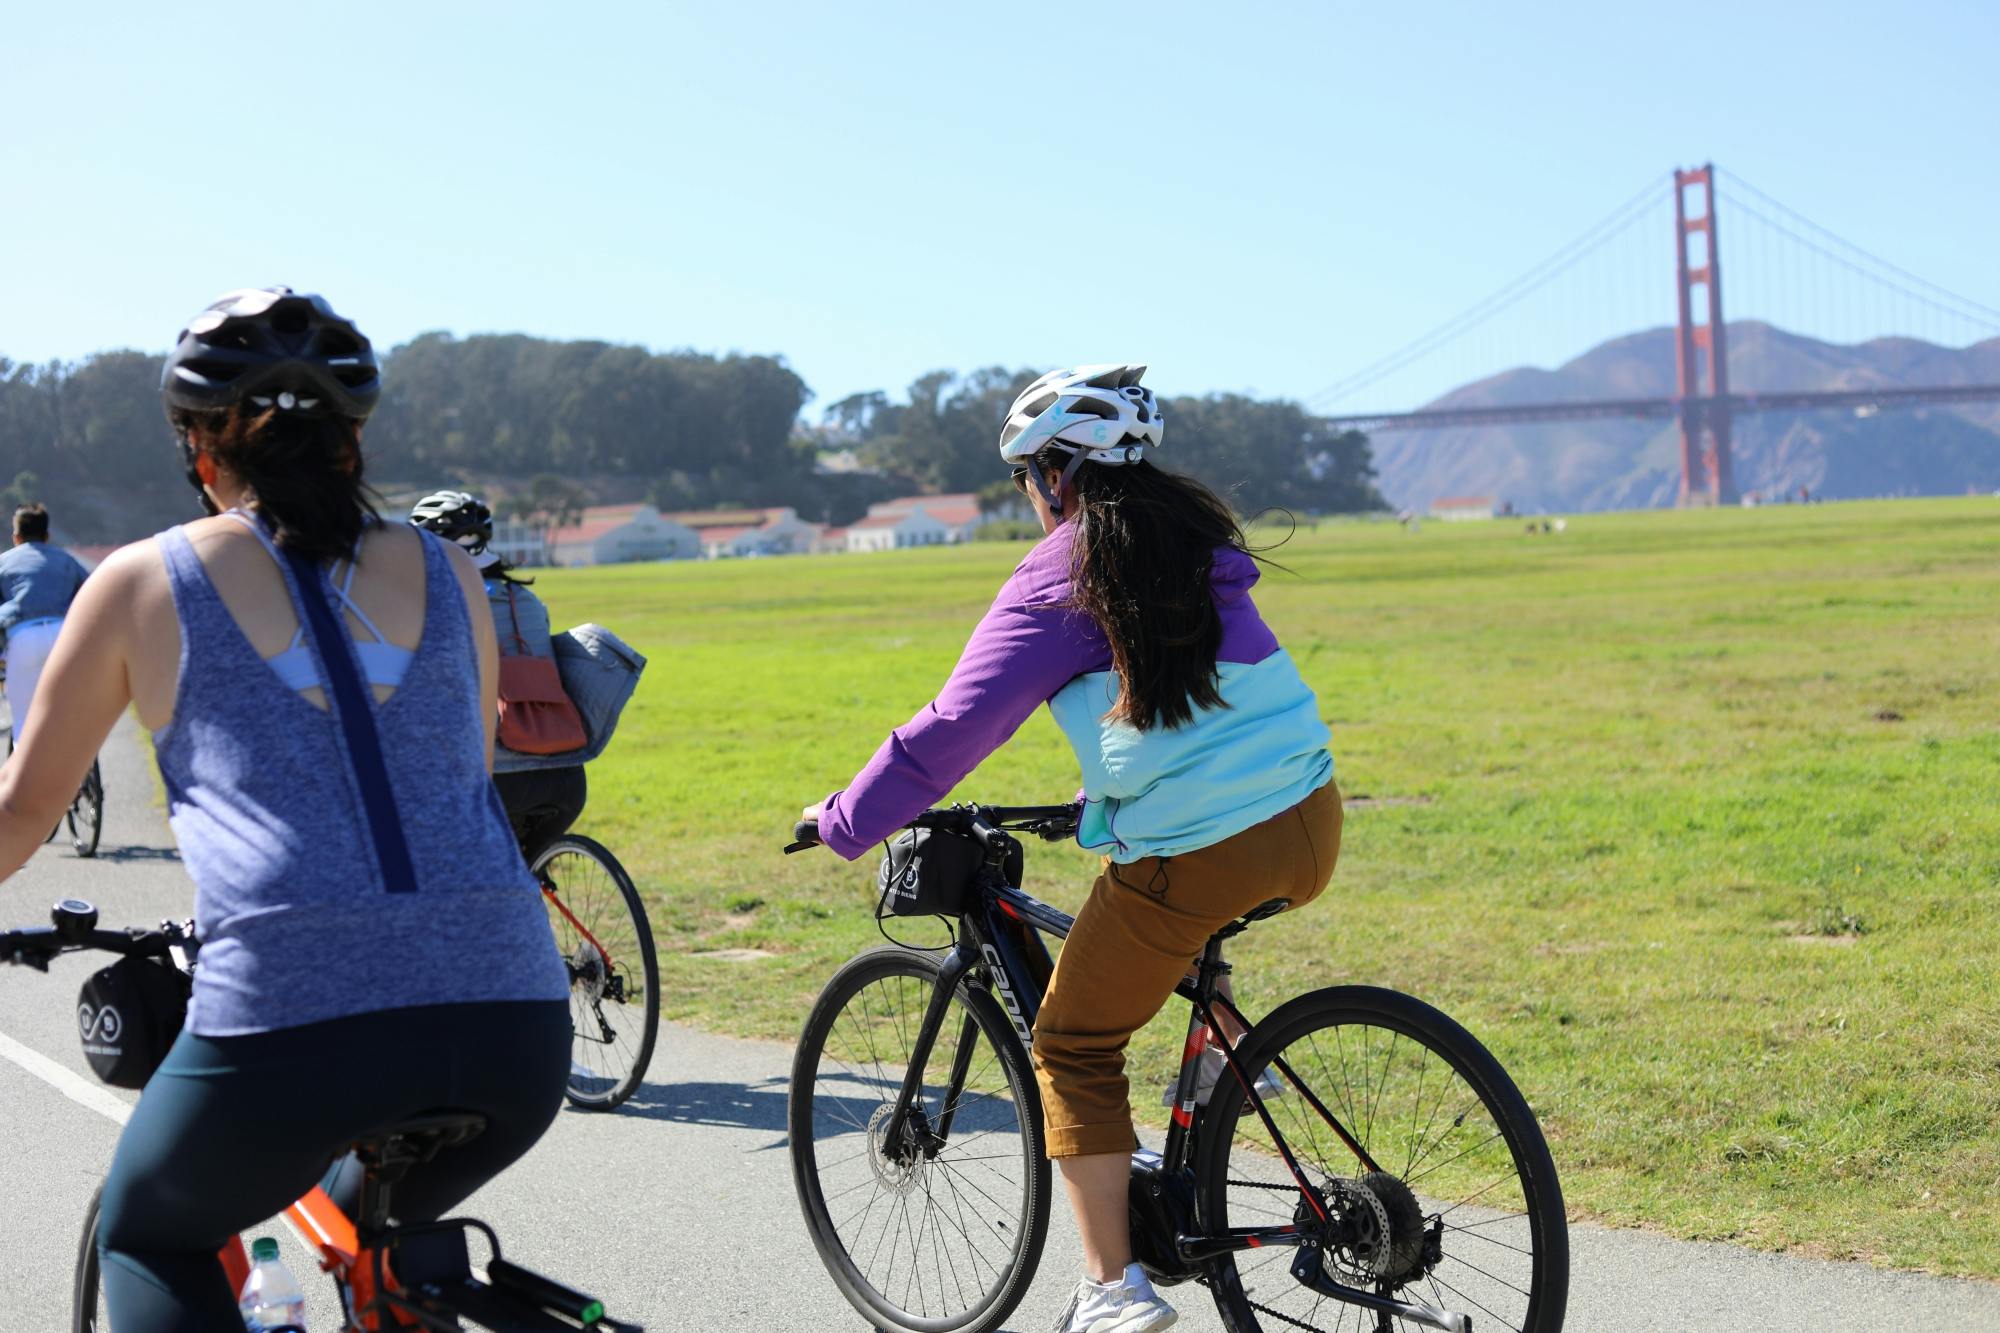 Höhepunkte der geführten Fahrradtour durch den Golden Gate Park